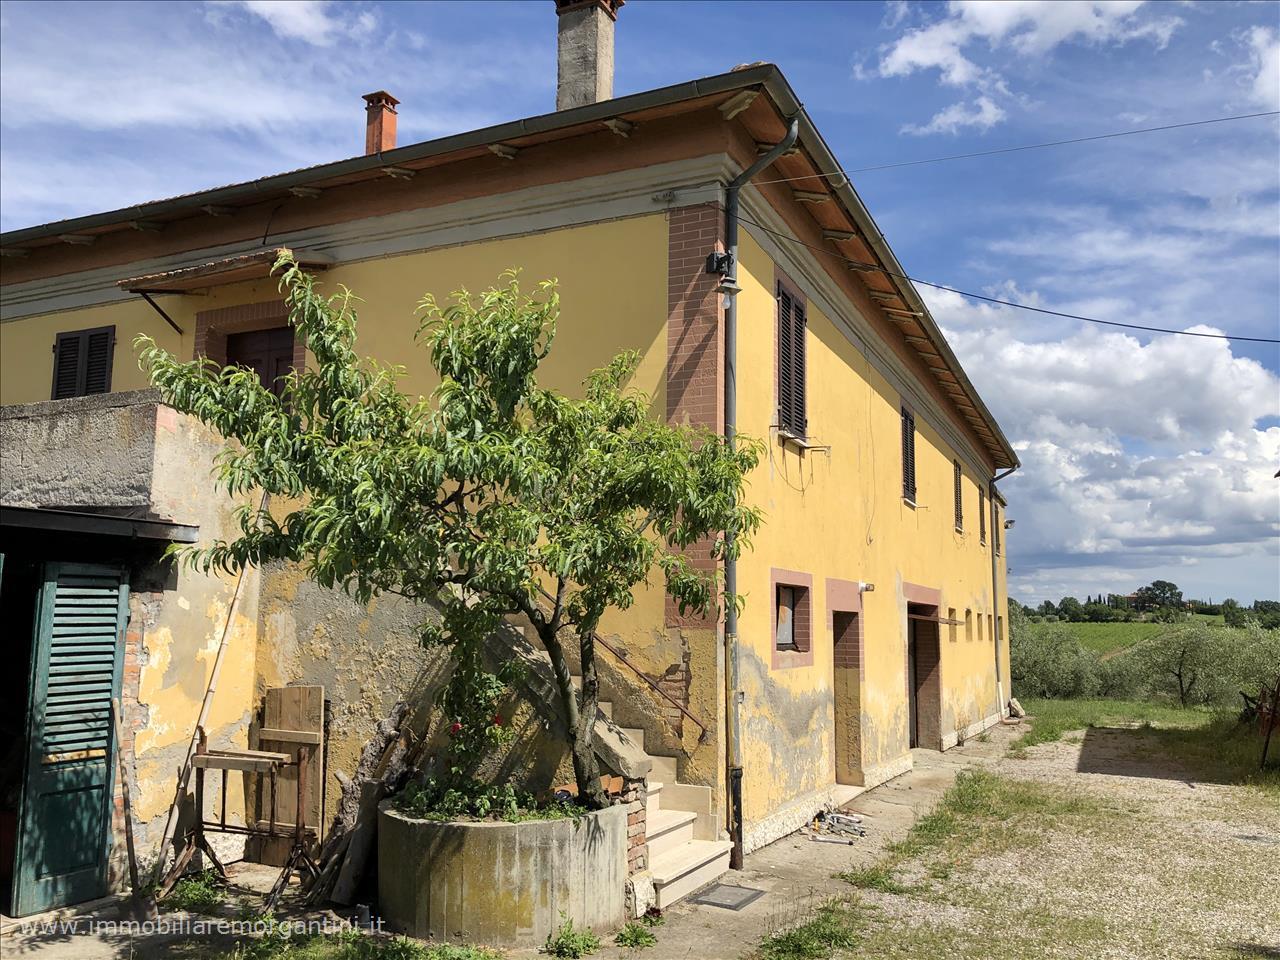 Rustico / Casale in vendita a Chianciano Terme, 9999 locali, prezzo € 370.000 | PortaleAgenzieImmobiliari.it